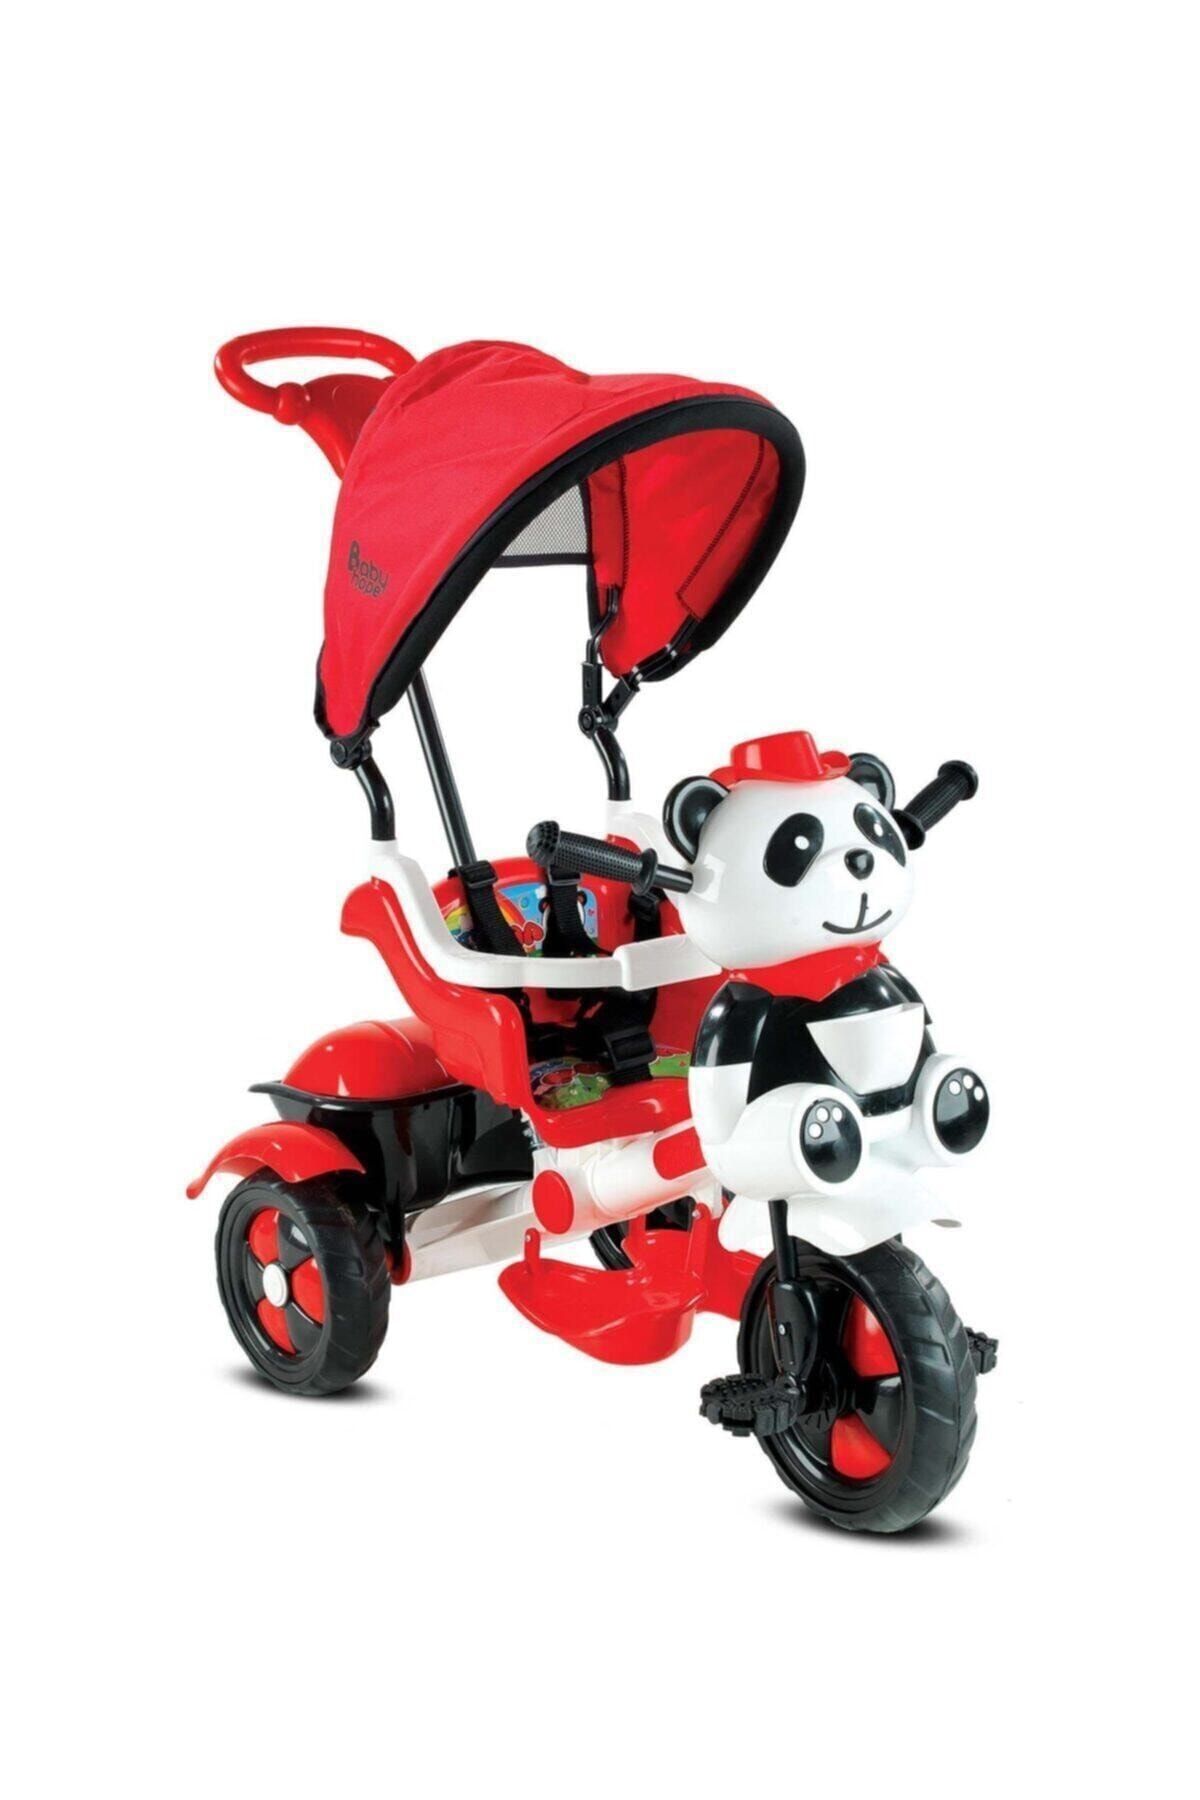 Babyhope 127 Little Panda Ebeveyn Kontrollü Tenteli Müzikli Tricycle Üç Teker Bisiklet -Kırmızı/Beyaz